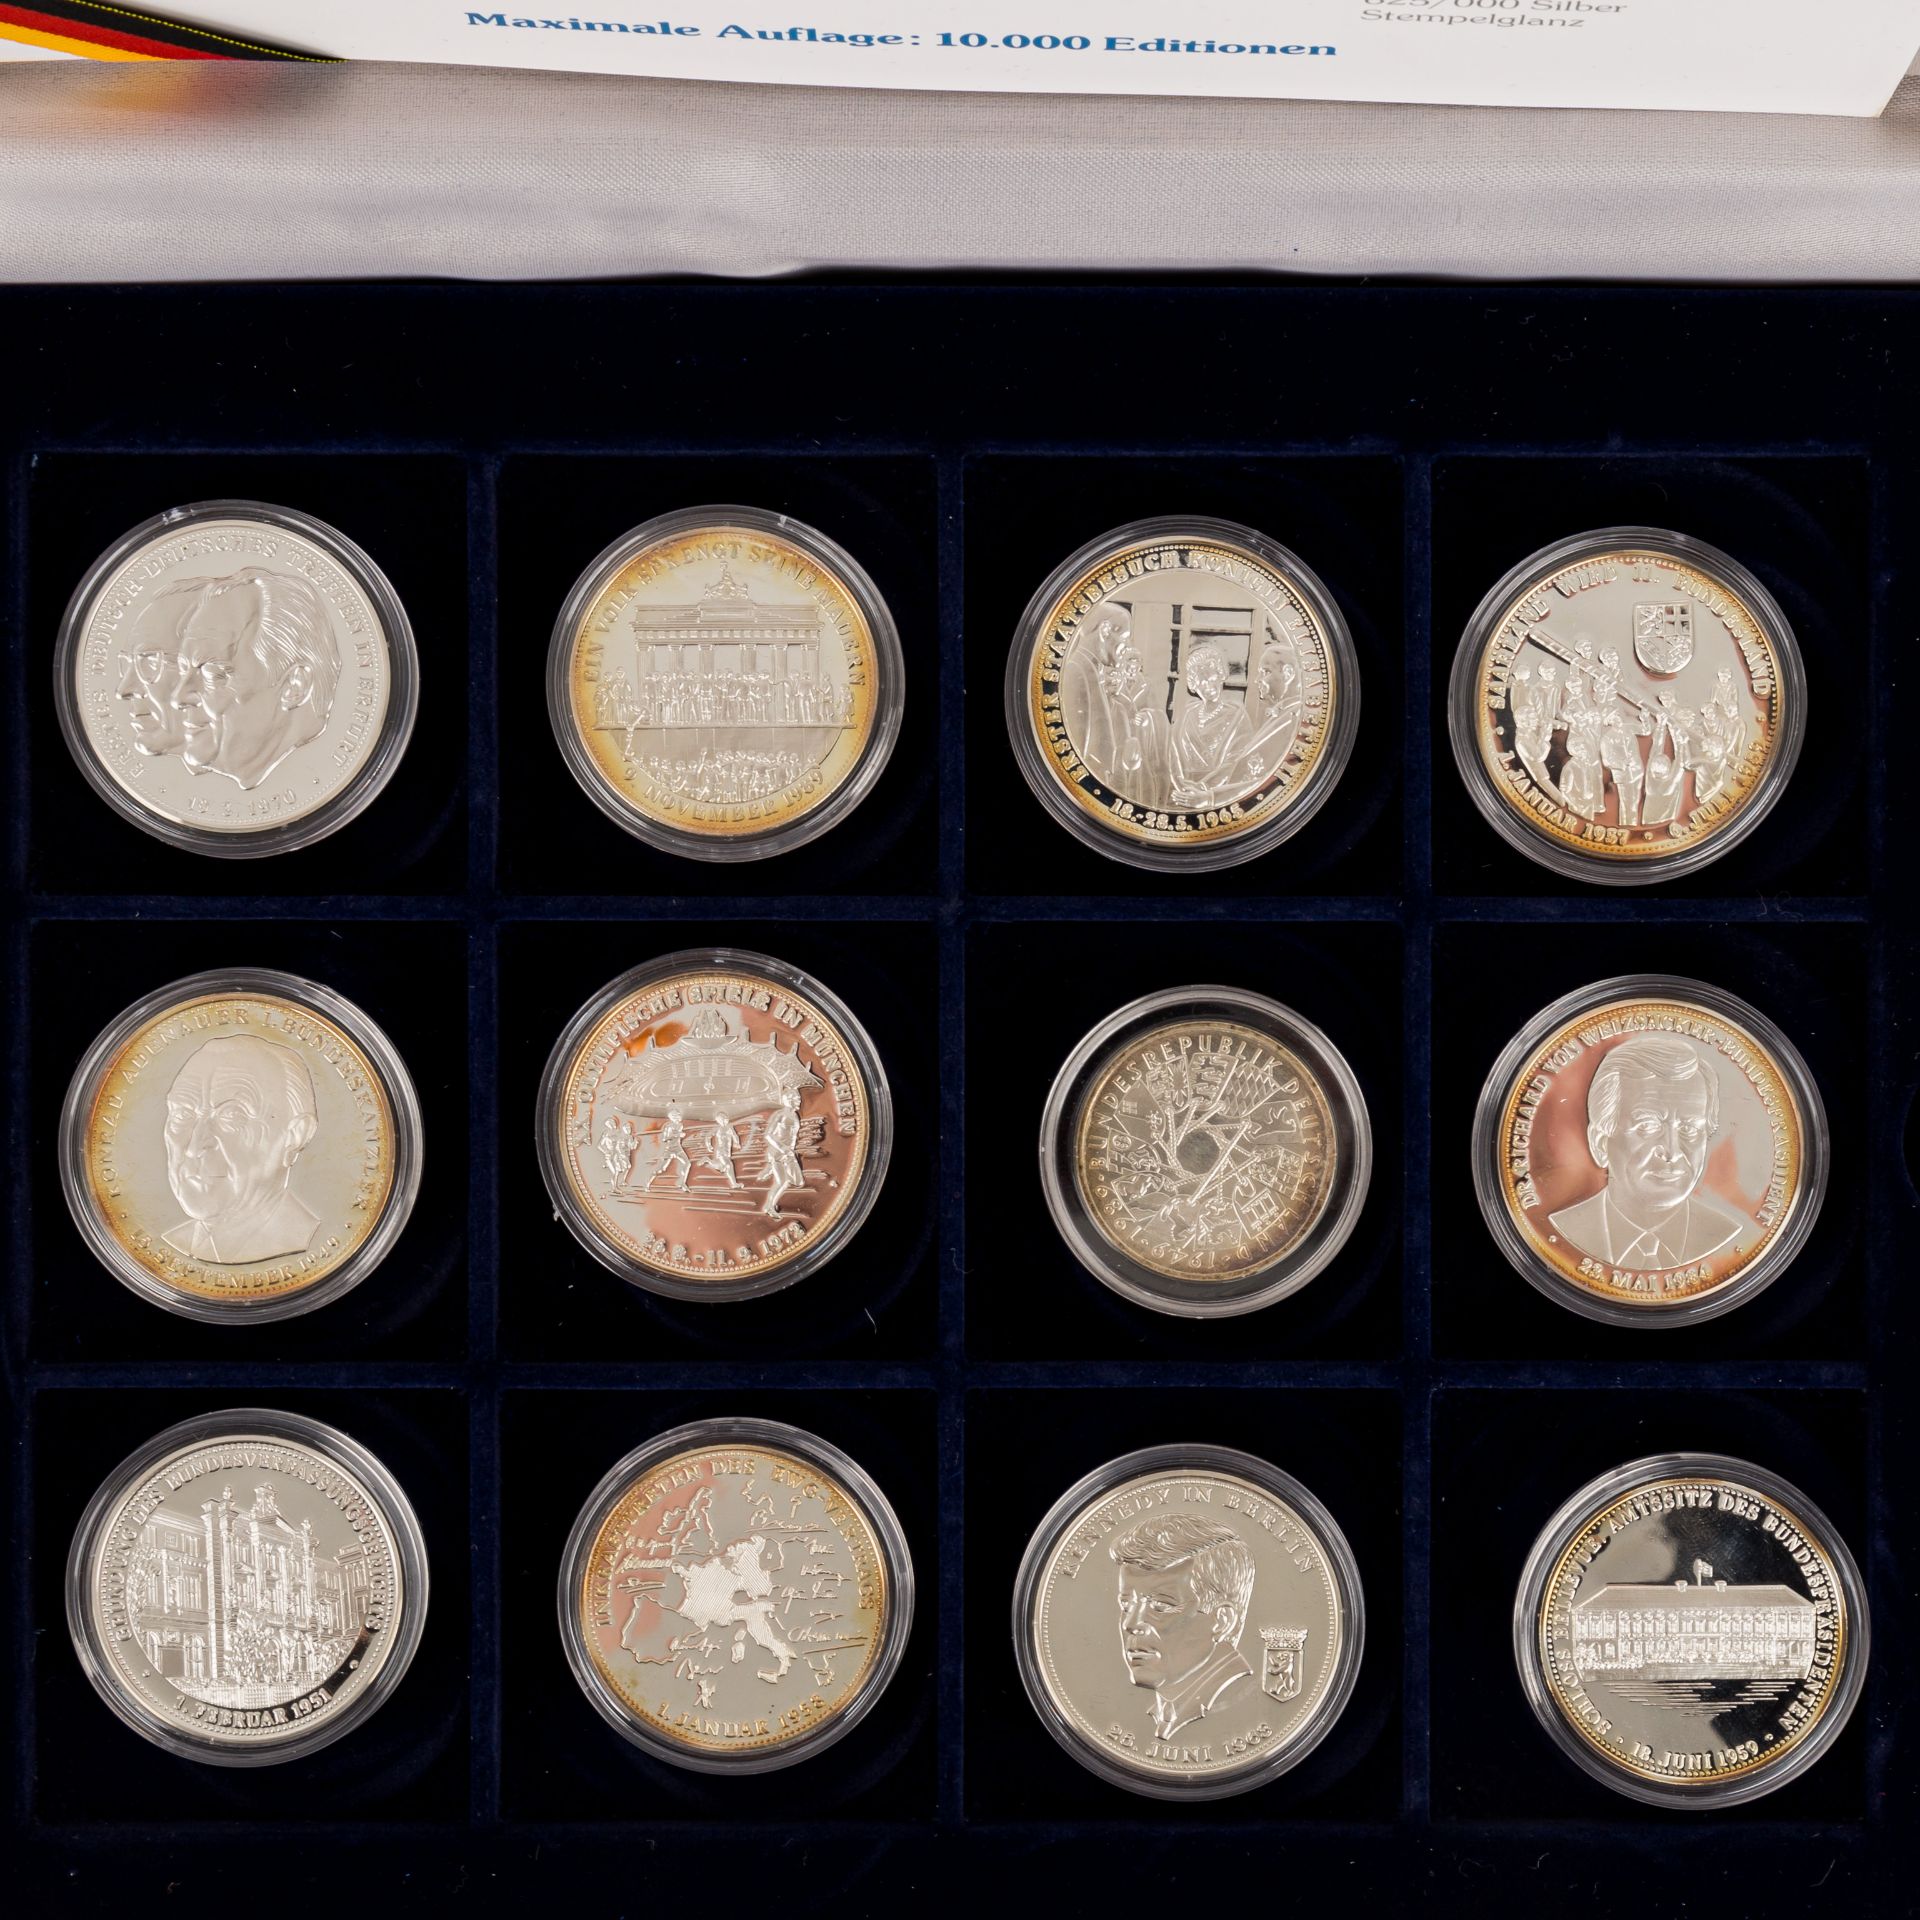 Münzen und Medaillen, BRD Gedenkmünzen,Österreich Schillinge, Medaillen 40 Jahre BRD fast nahezu 500 - Bild 5 aus 12